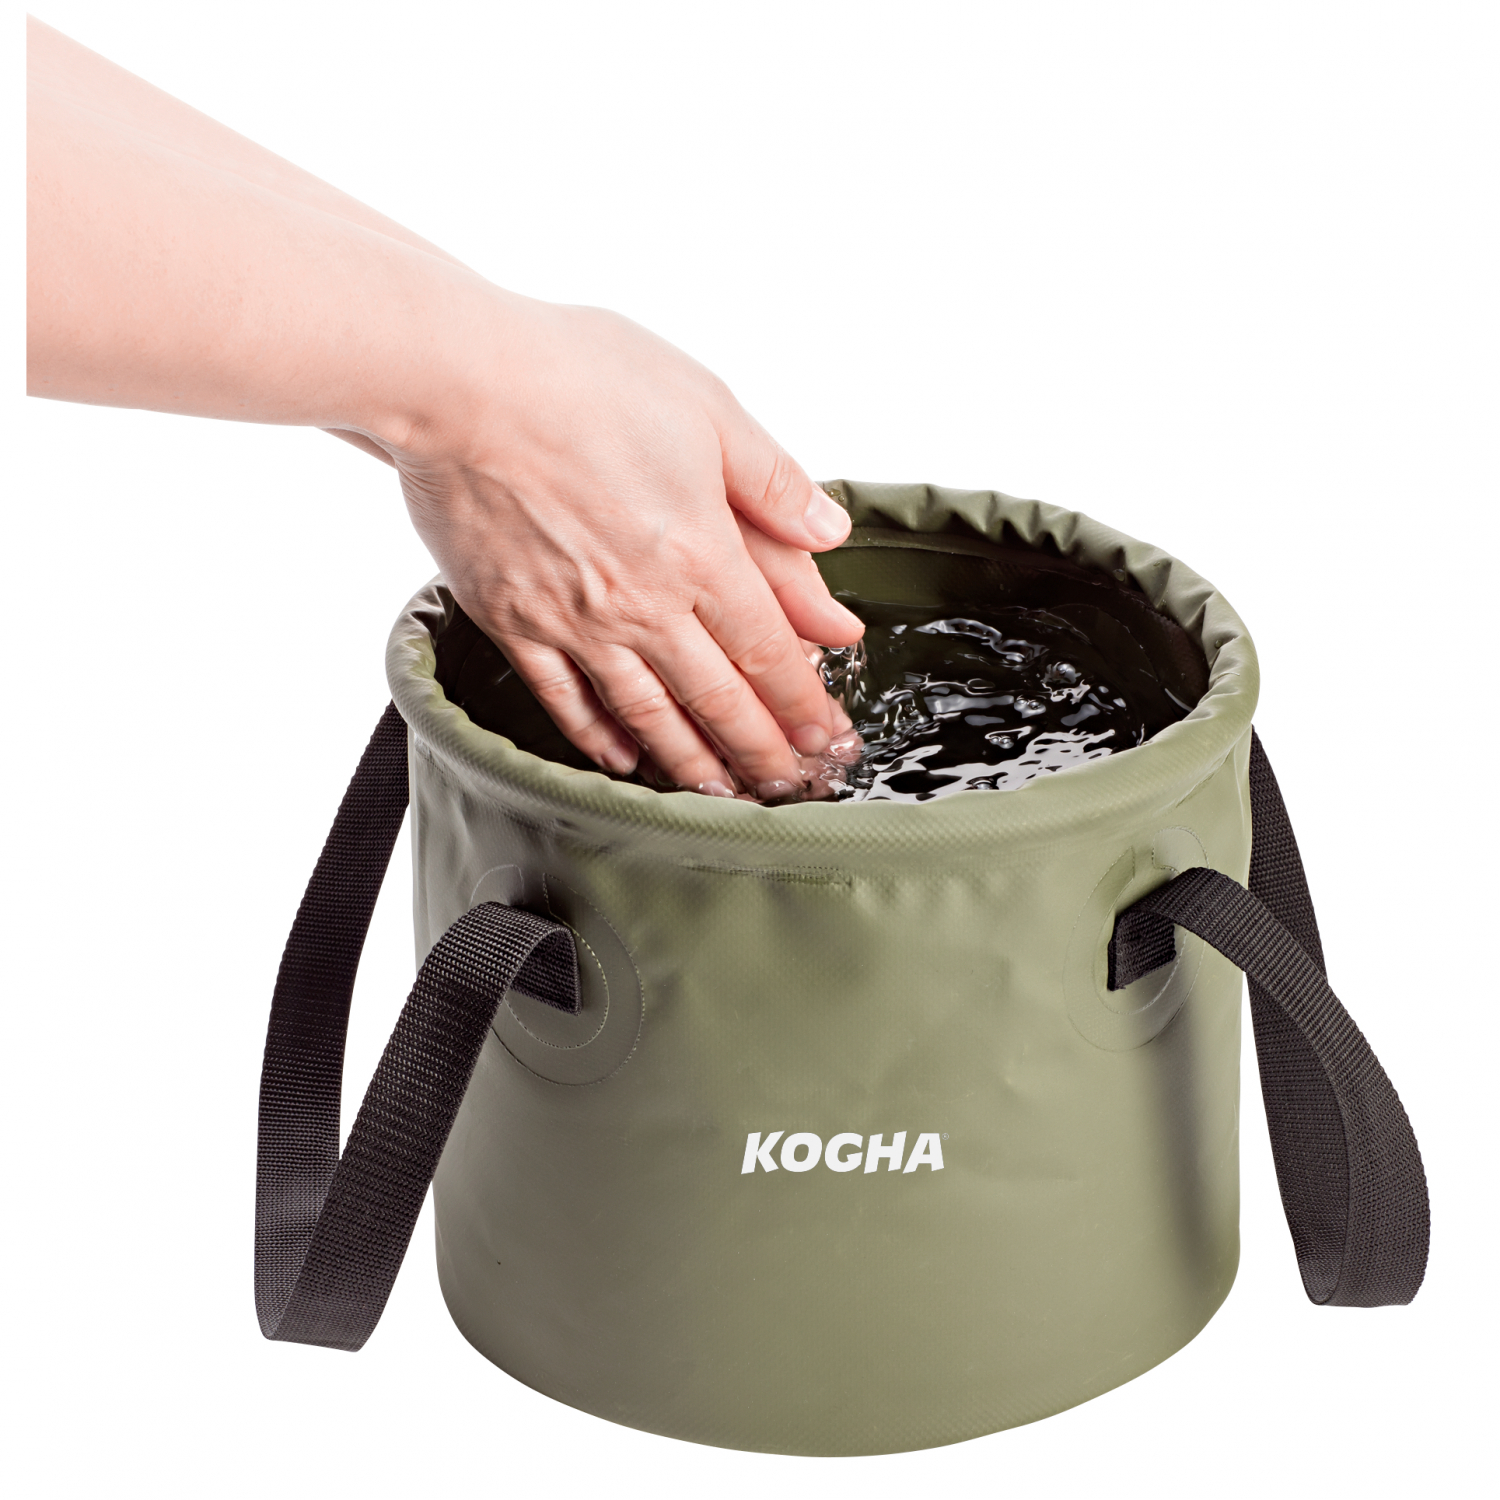 Kogha Foldable Bucket Multi Use 